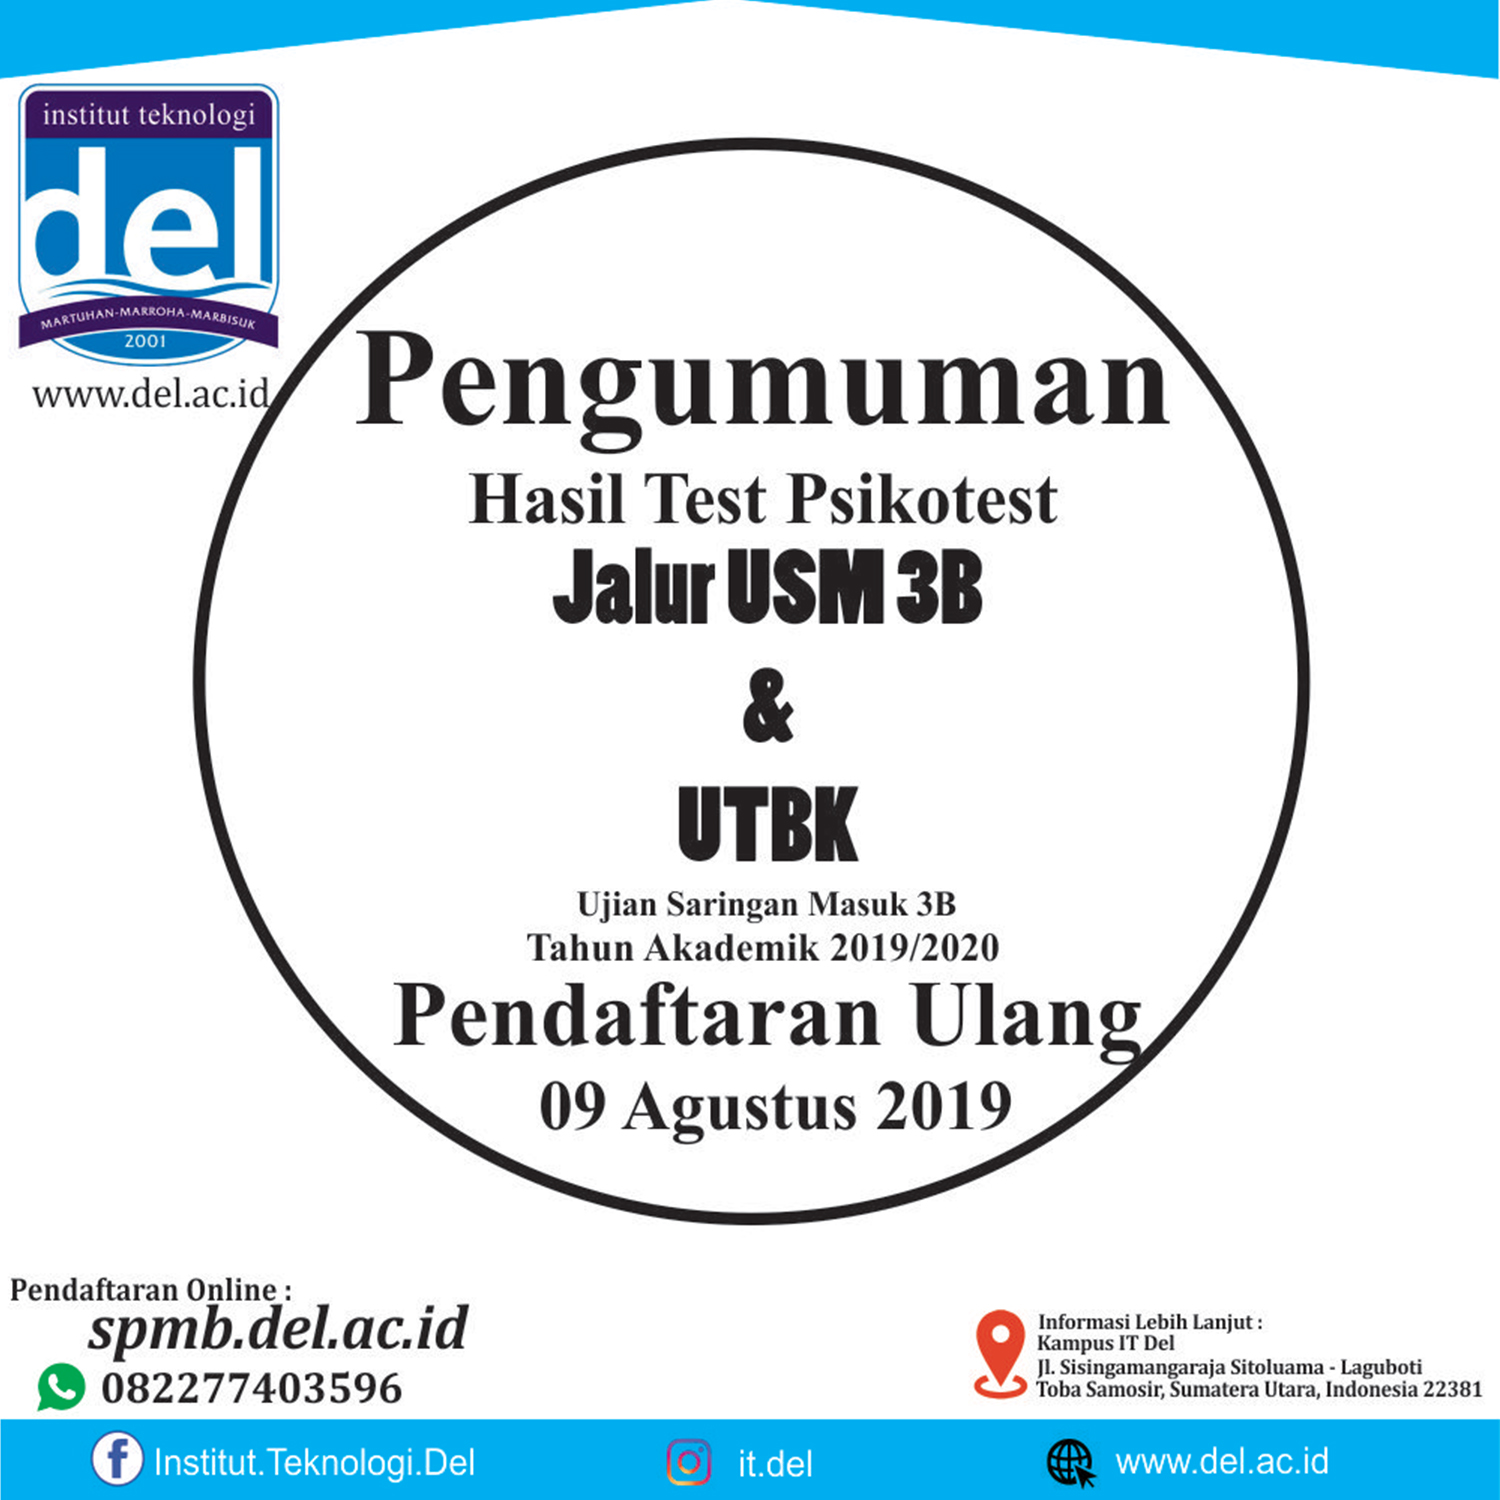 Pengumuman Hasil Test Psikotest USM 3B & UTBK, Pendaftaran Ulang 9 Agustus 2019